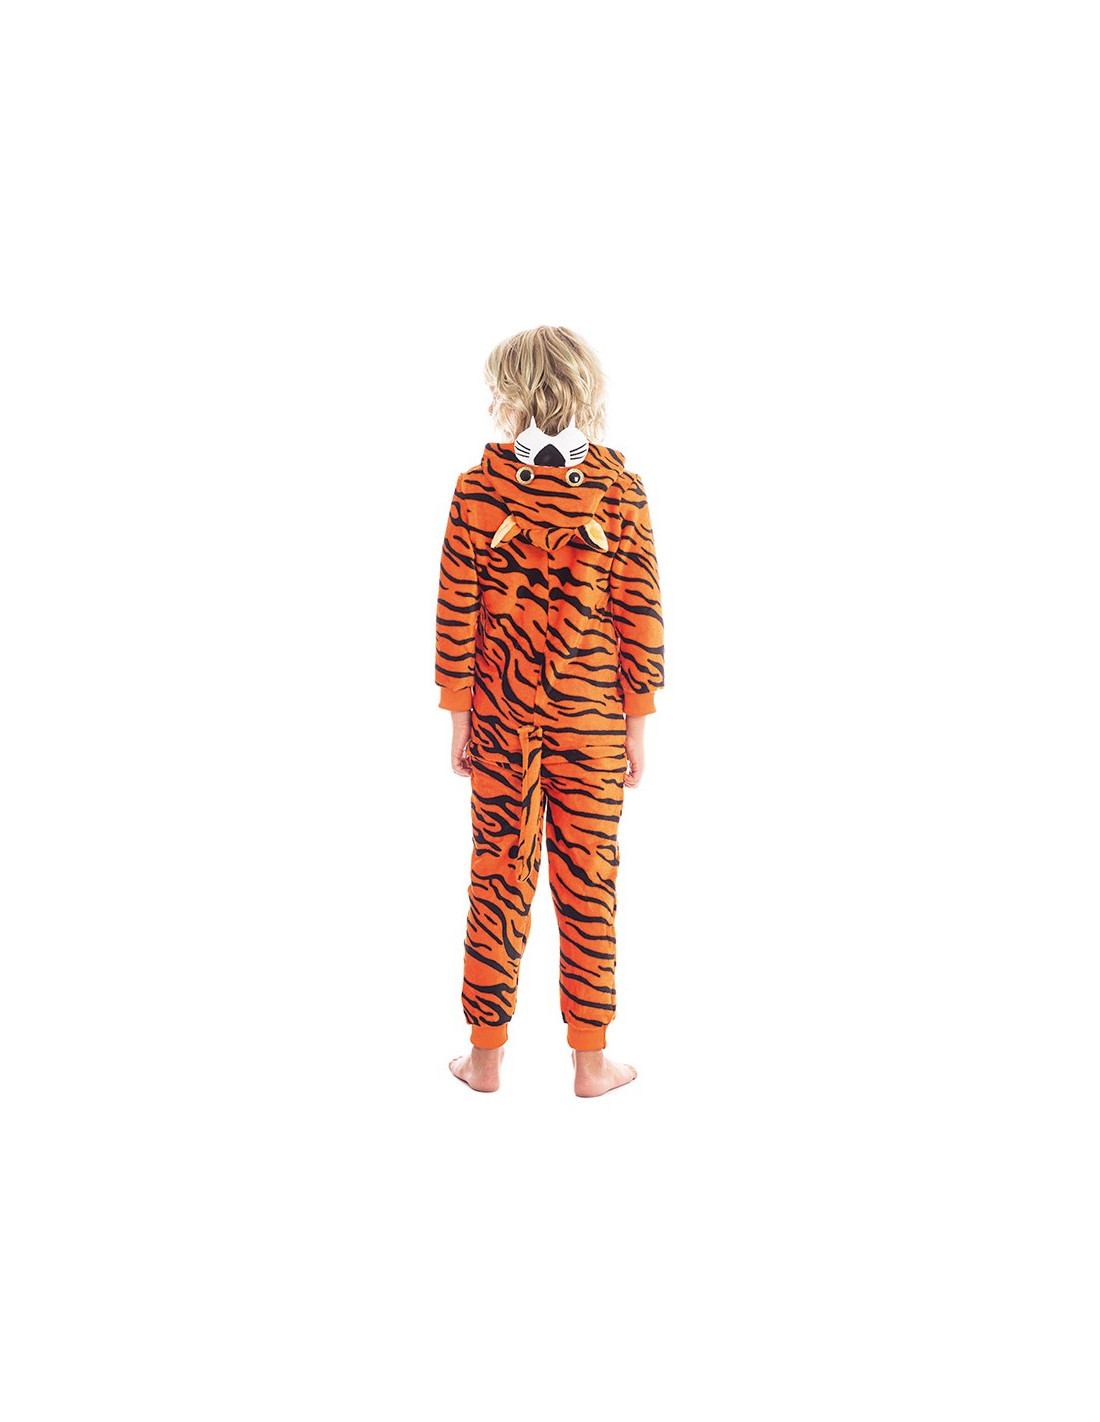 rima lobo arrendamiento Disfraz de Tigre Pijama de Peluche para Niños | Comprar Online